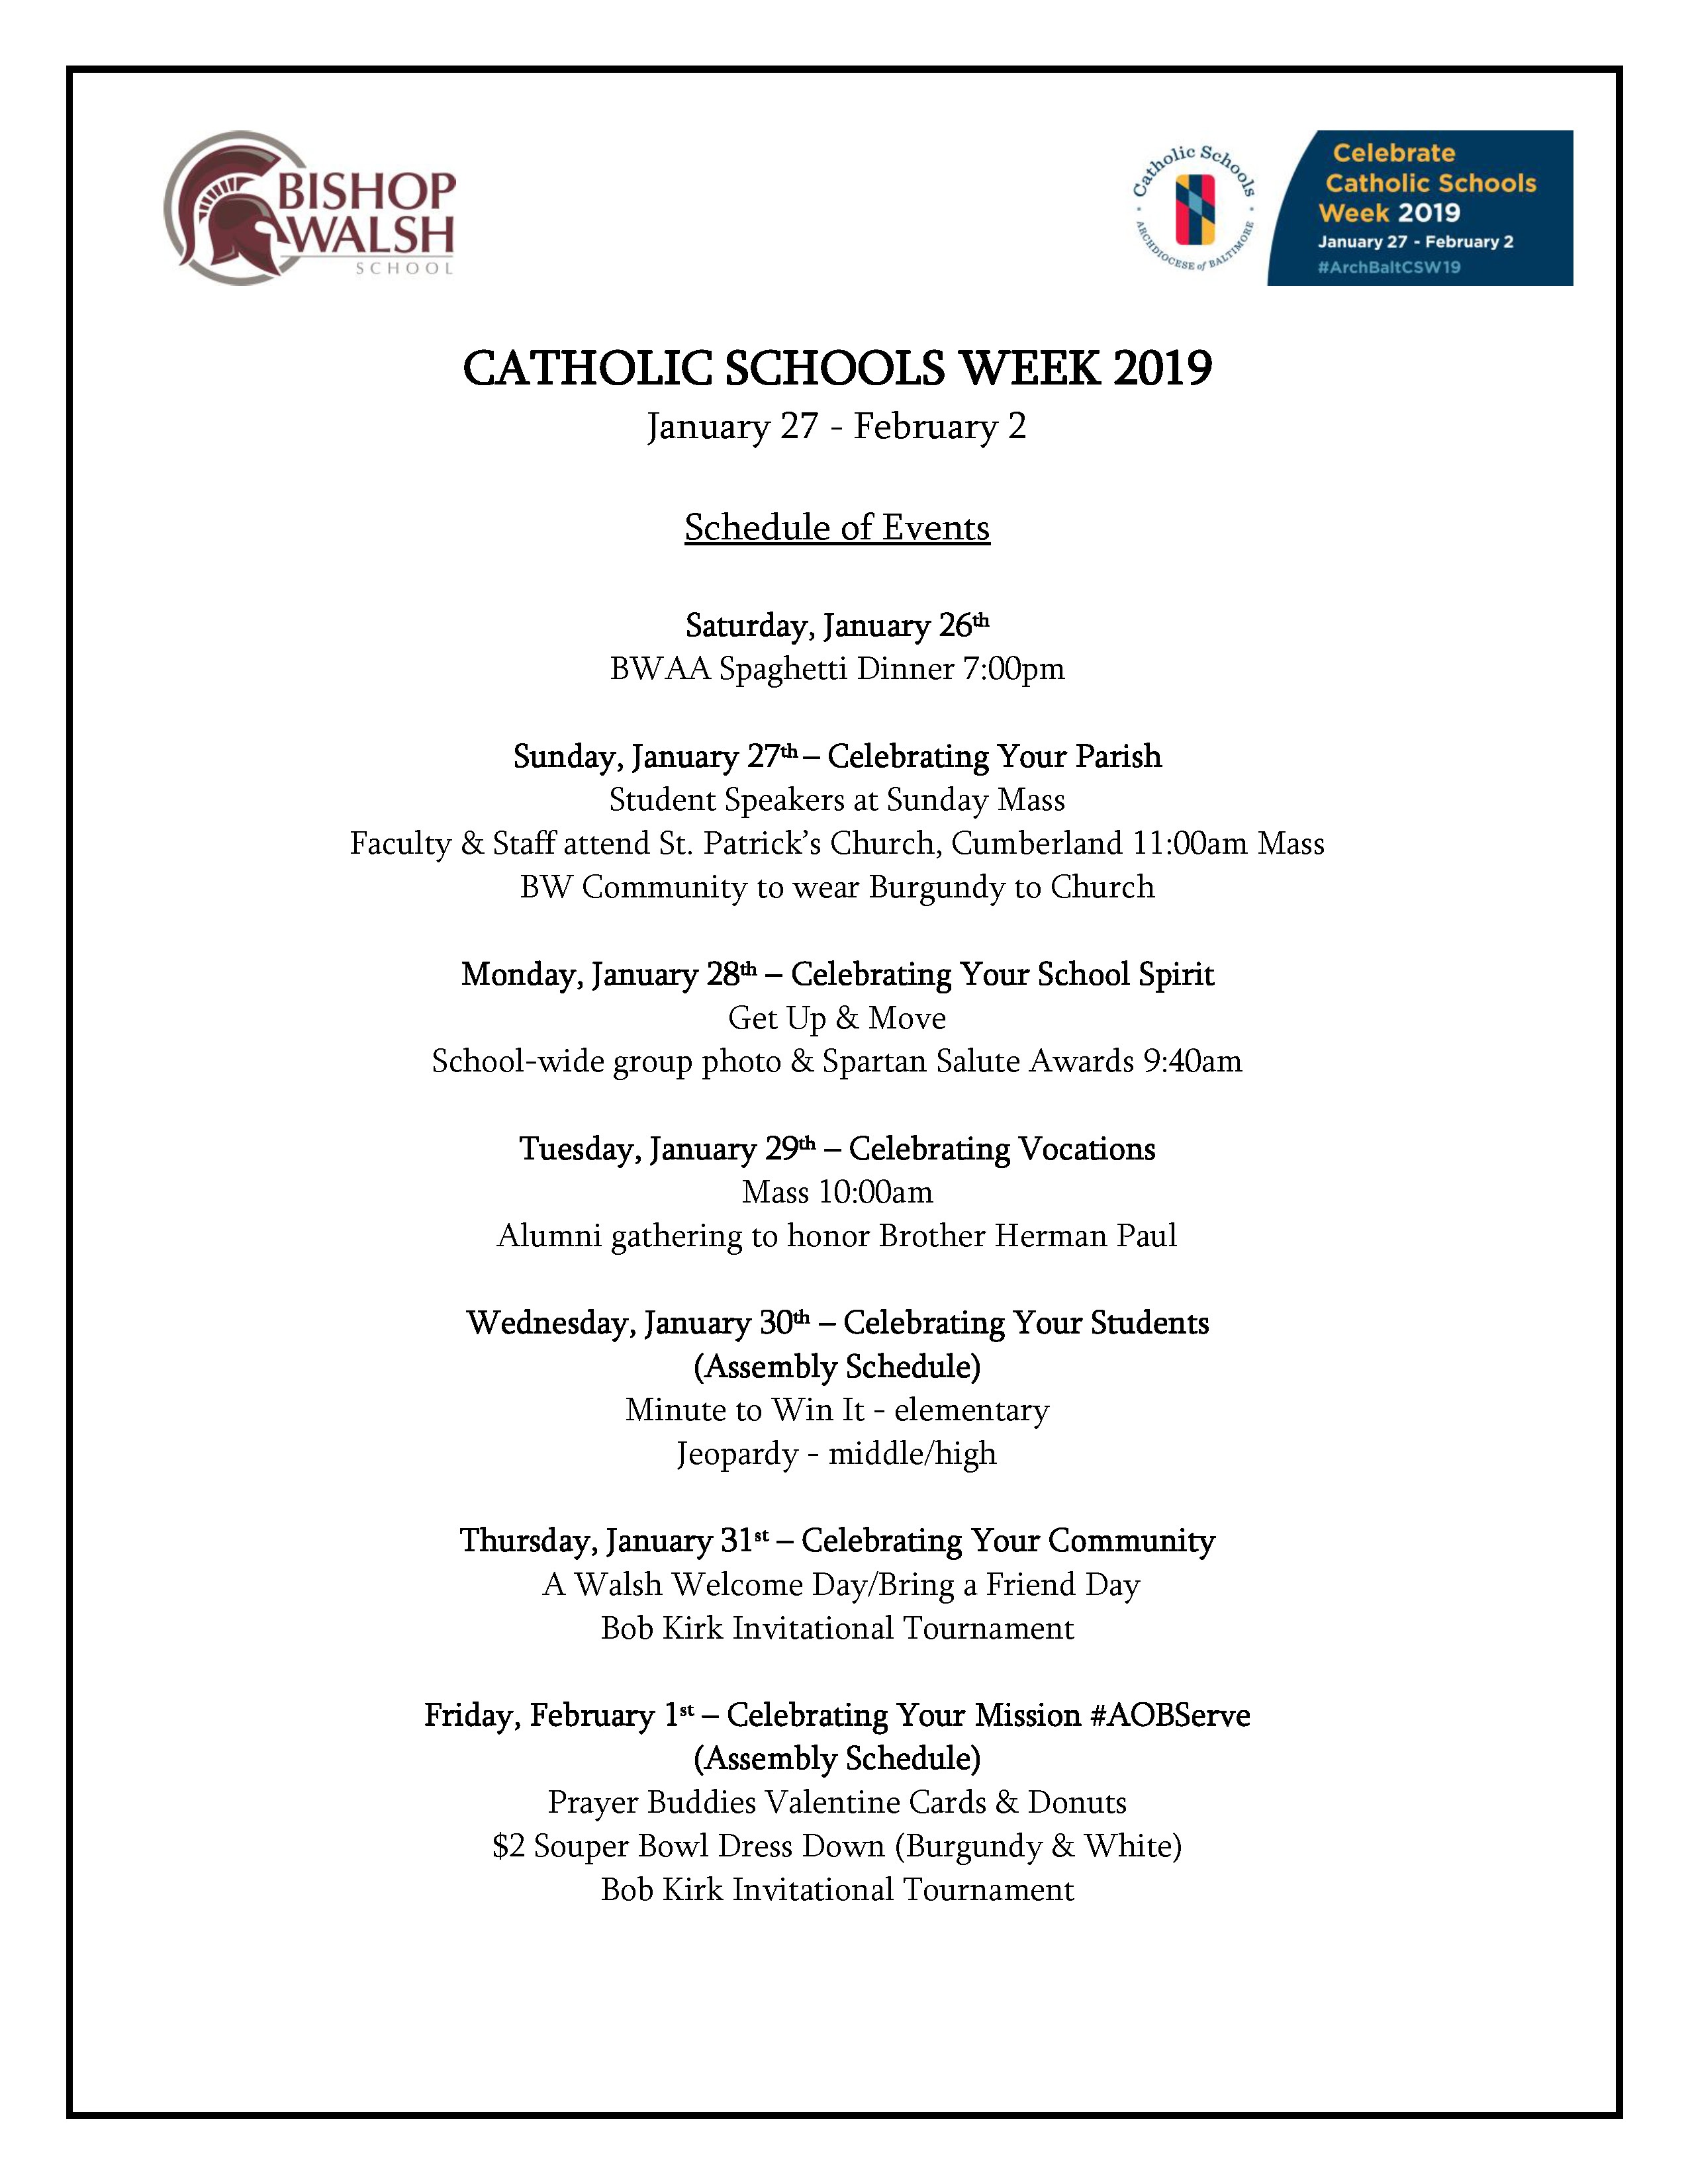 Catholic Schools Week 19 Schedule Bishop Walsh School